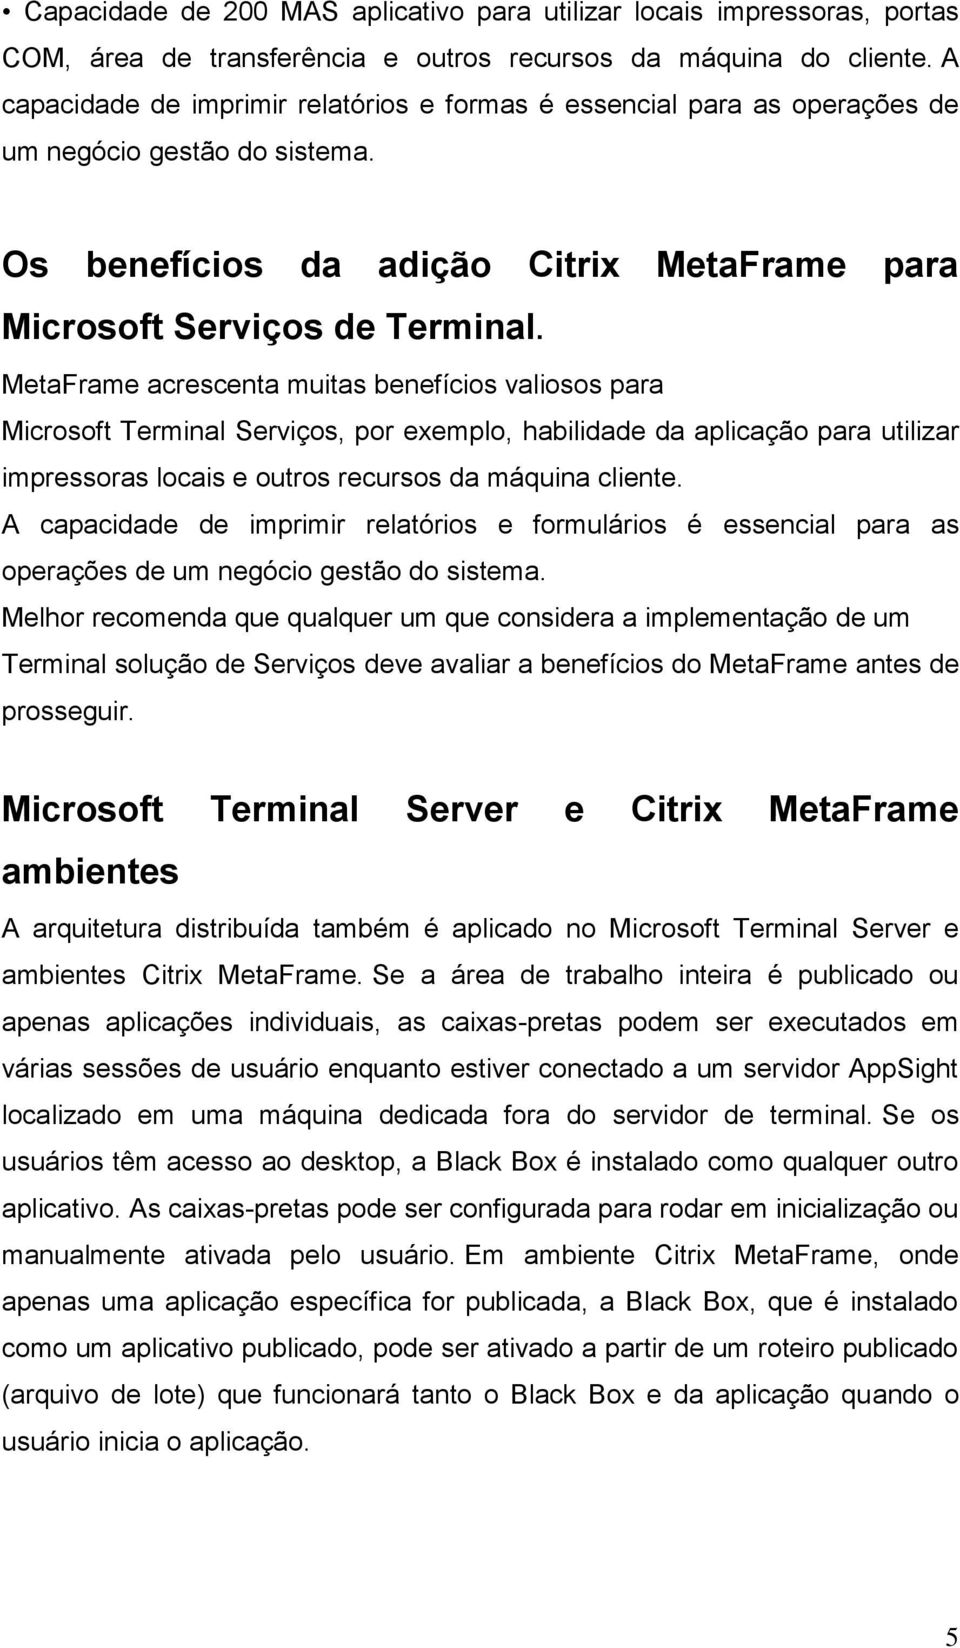 MetaFrame acrescenta muitas benefícios valiosos para Microsoft Terminal Serviços, por exemplo, habilidade da aplicação para utilizar impressoras locais e outros recursos da máquina cliente.